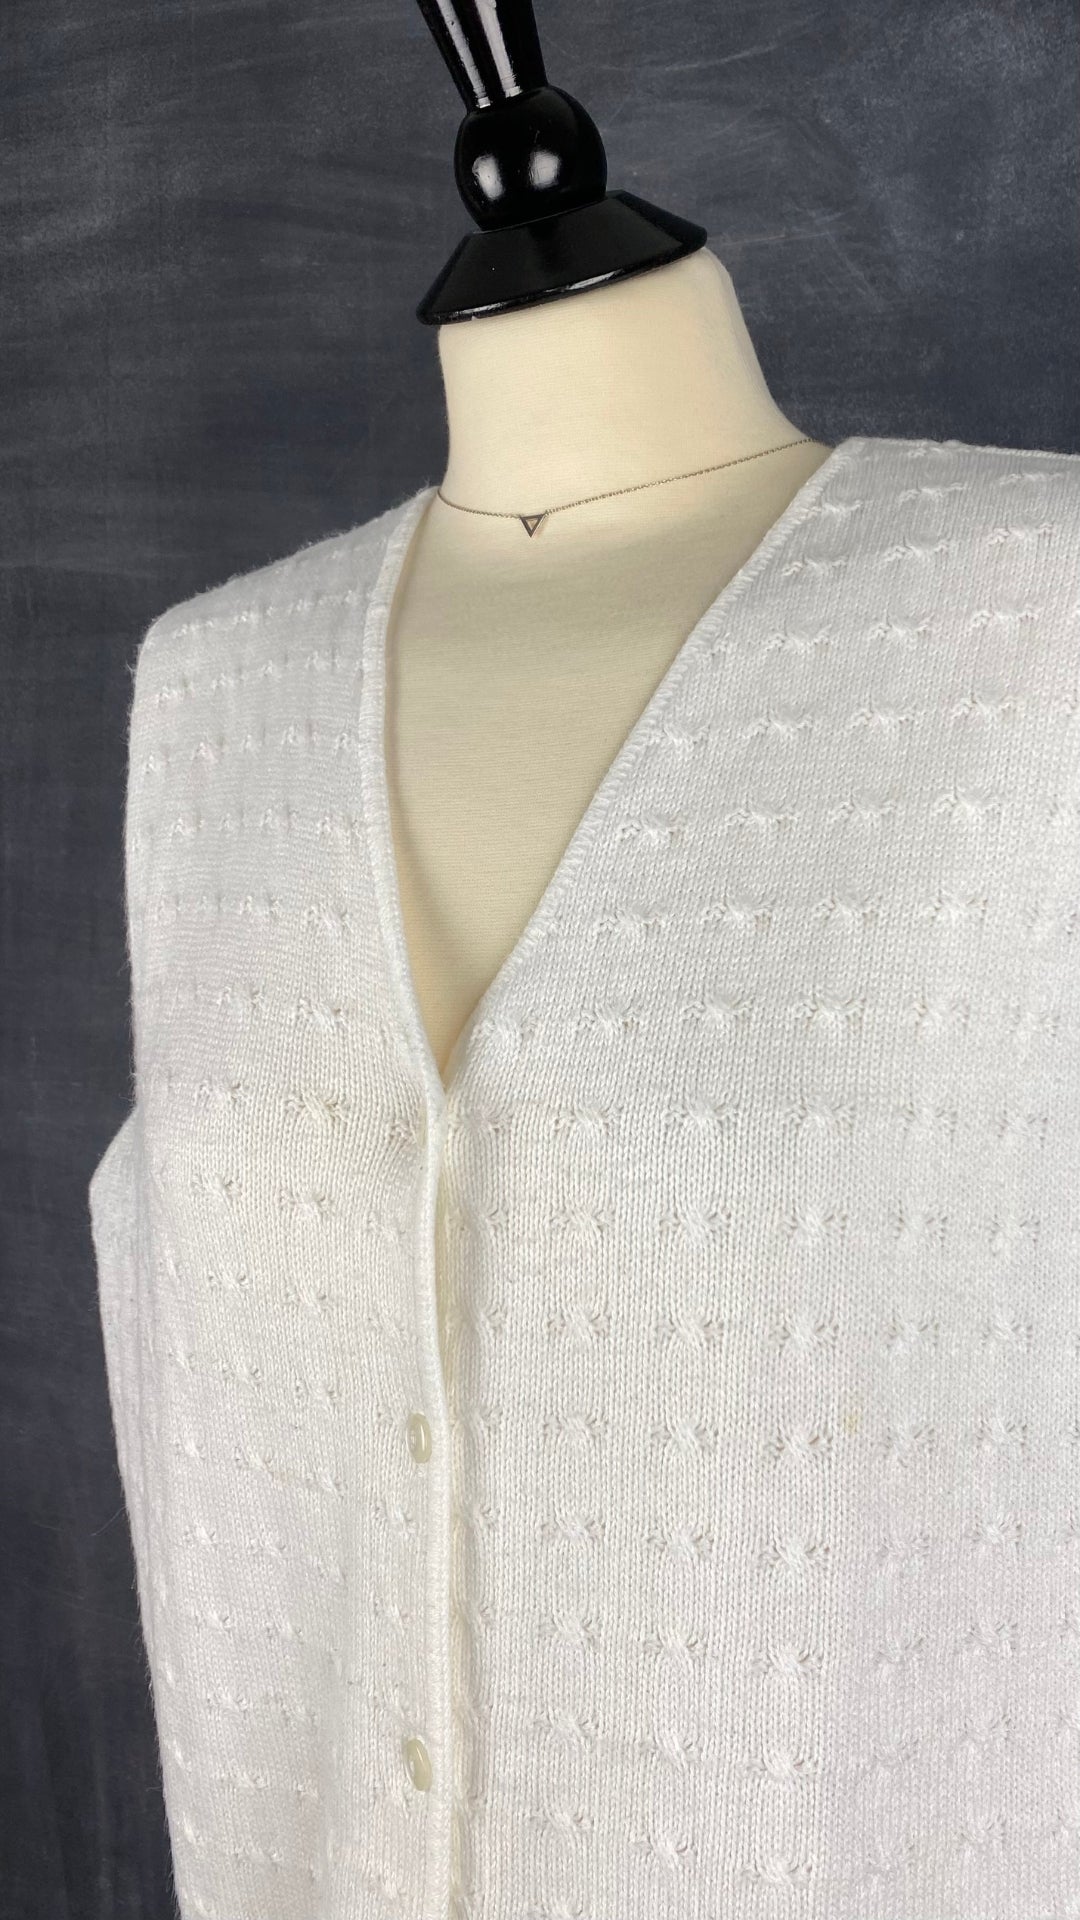 Gilet en tricot féminin crème vintage D'Aillairds, taille m/l. Vue de l'encolure.